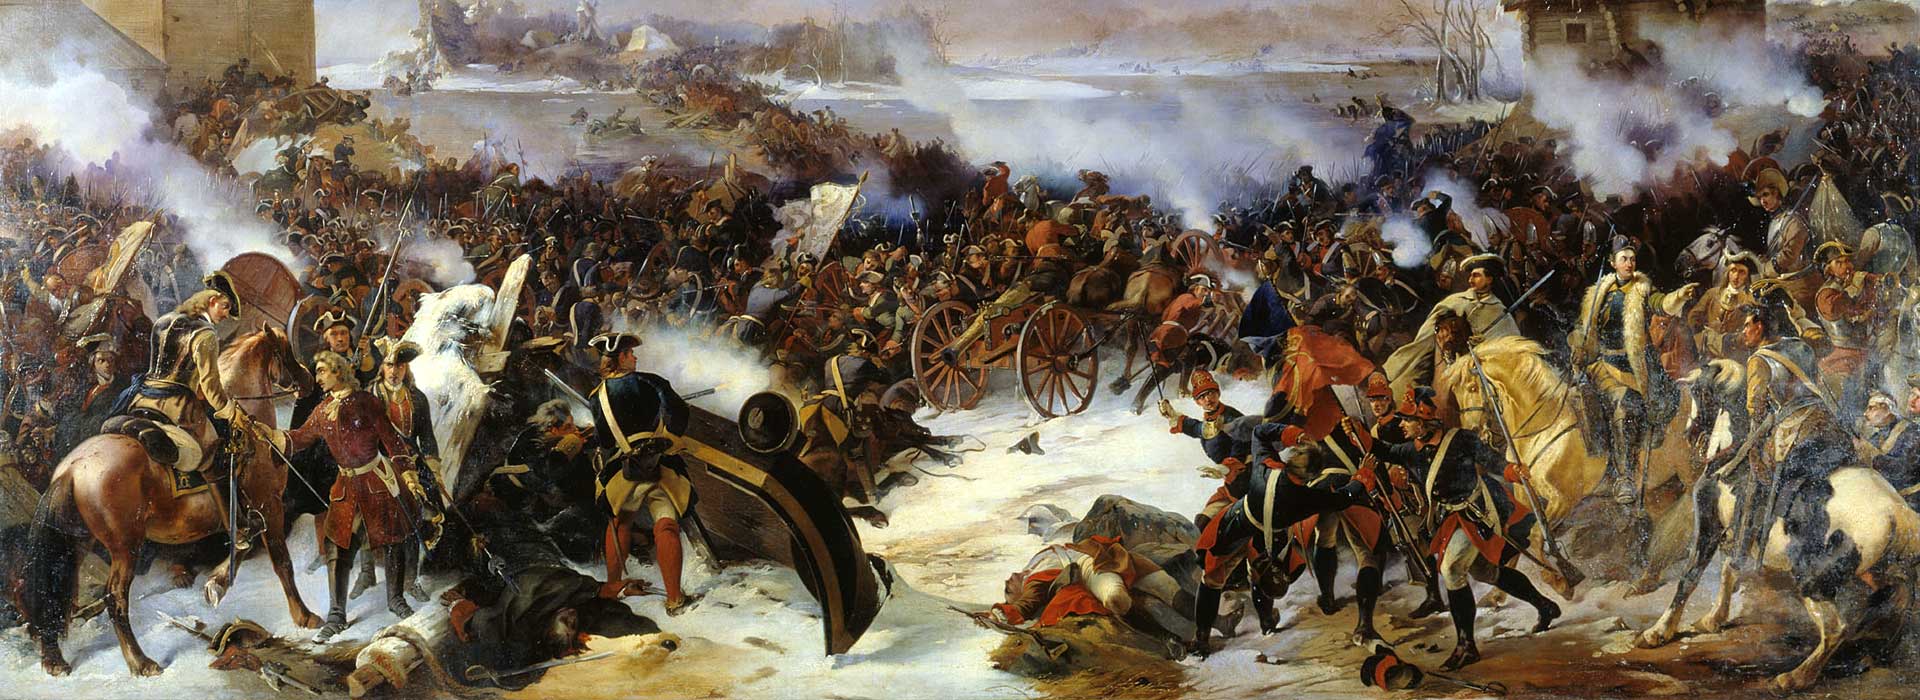 Нарва поражение к победе. Битва при Нарве 1700.